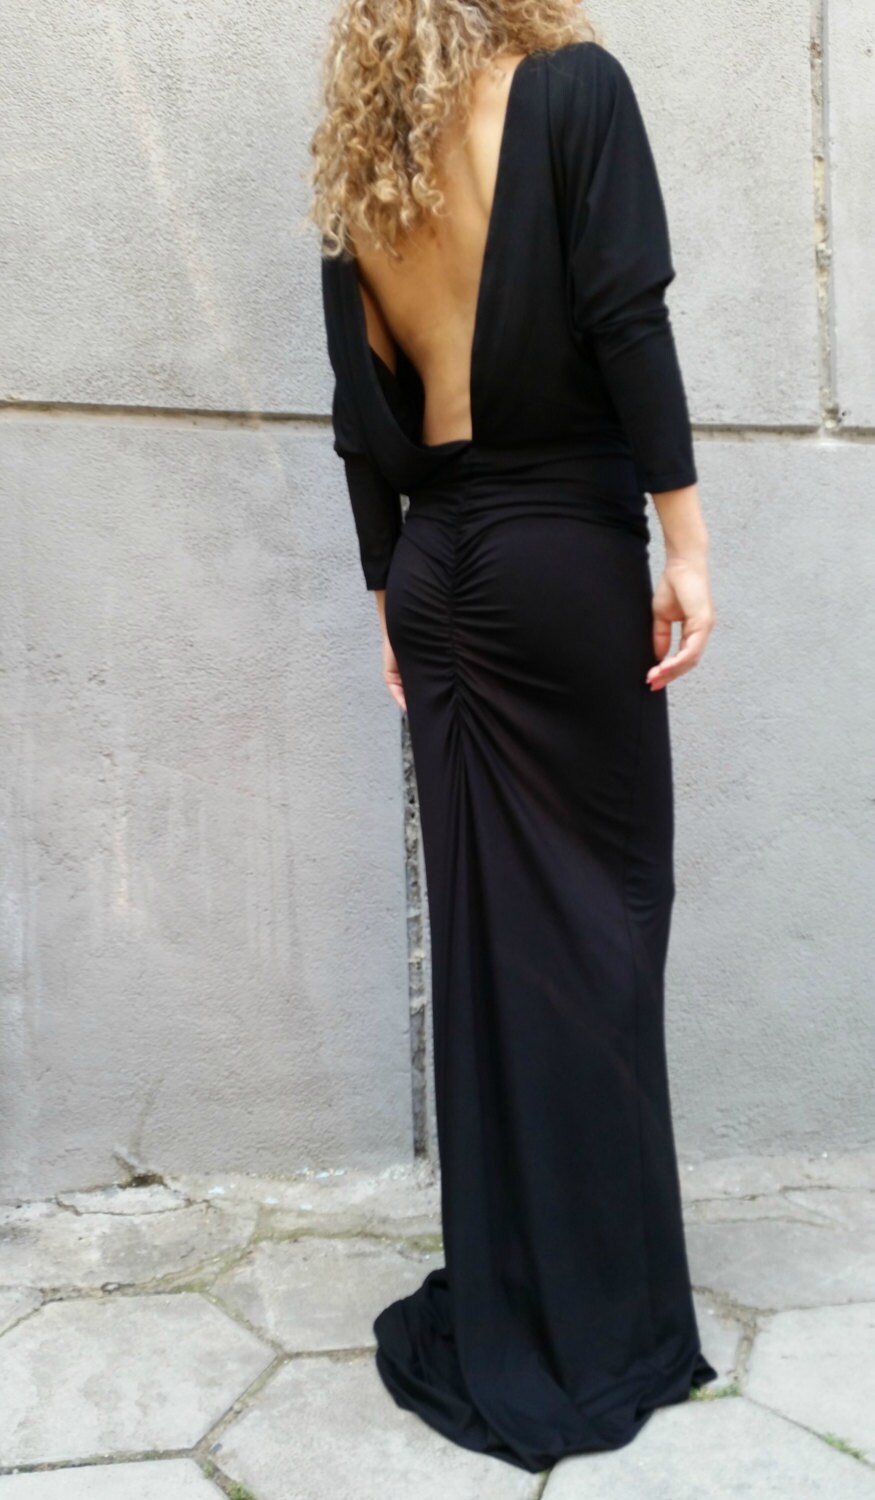 Long Sleeve Maxi Dress Loose Open Back Black Dress Dolman | Etsy Hong Kong